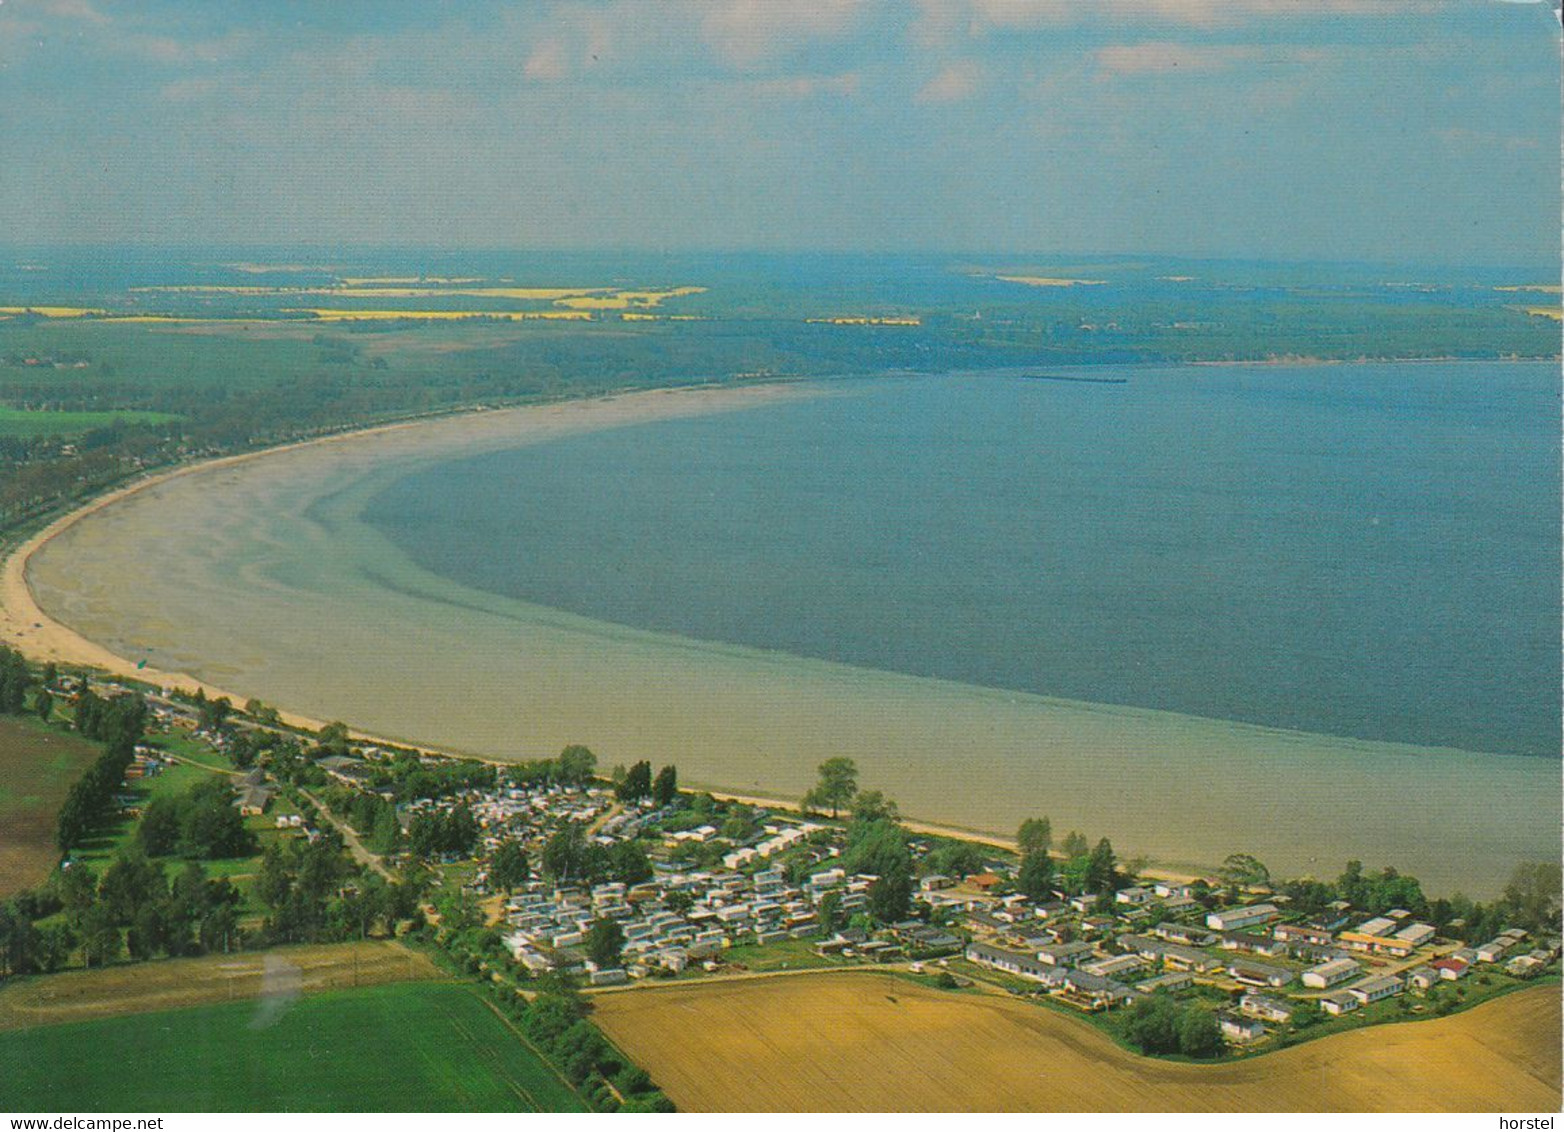 D-23948 Wohlenberg - Wohlenberger Wiek - Campingplatz - Luftaufnahme - Aerial View - Nice Stamp - Grevesmuehlen